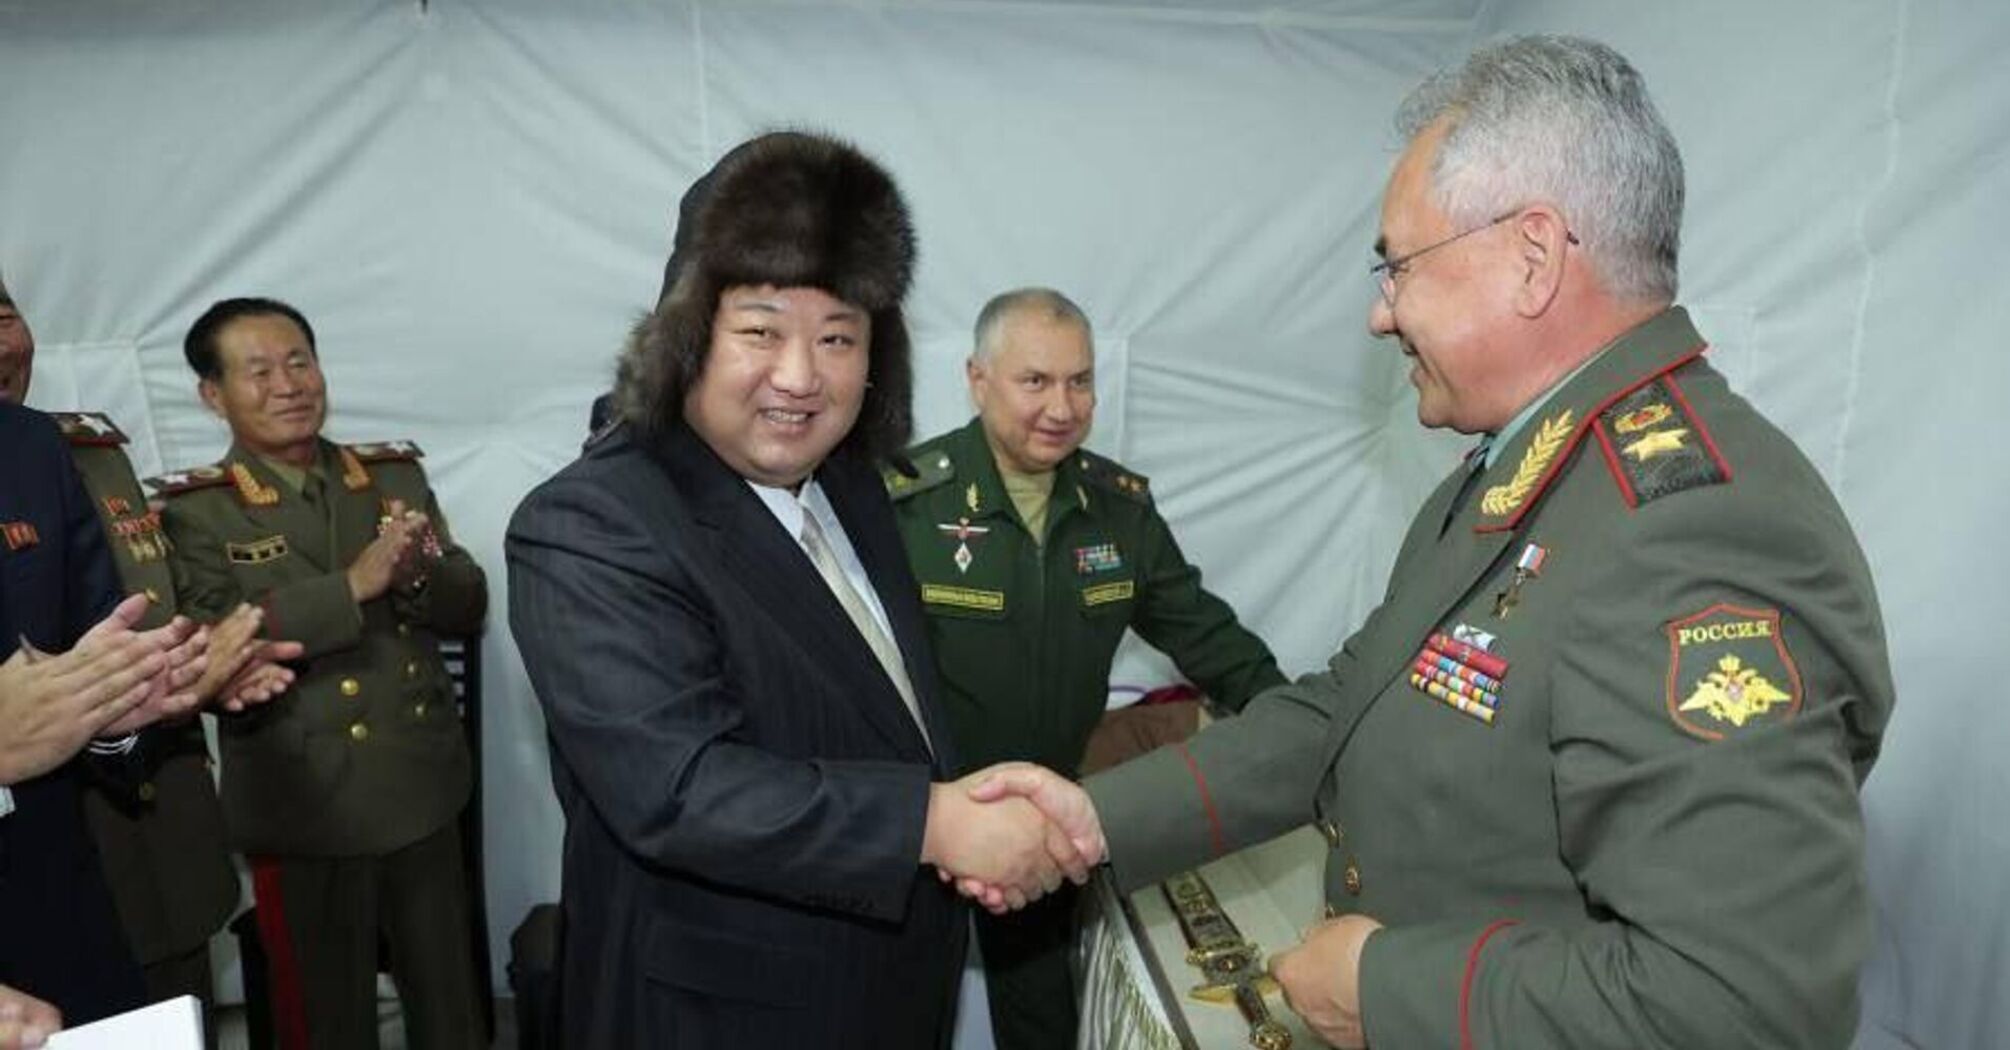 Kim Dzong Un chce wykorzystać więzi z Rosją do ożywienia gospodarki KRLD - FT